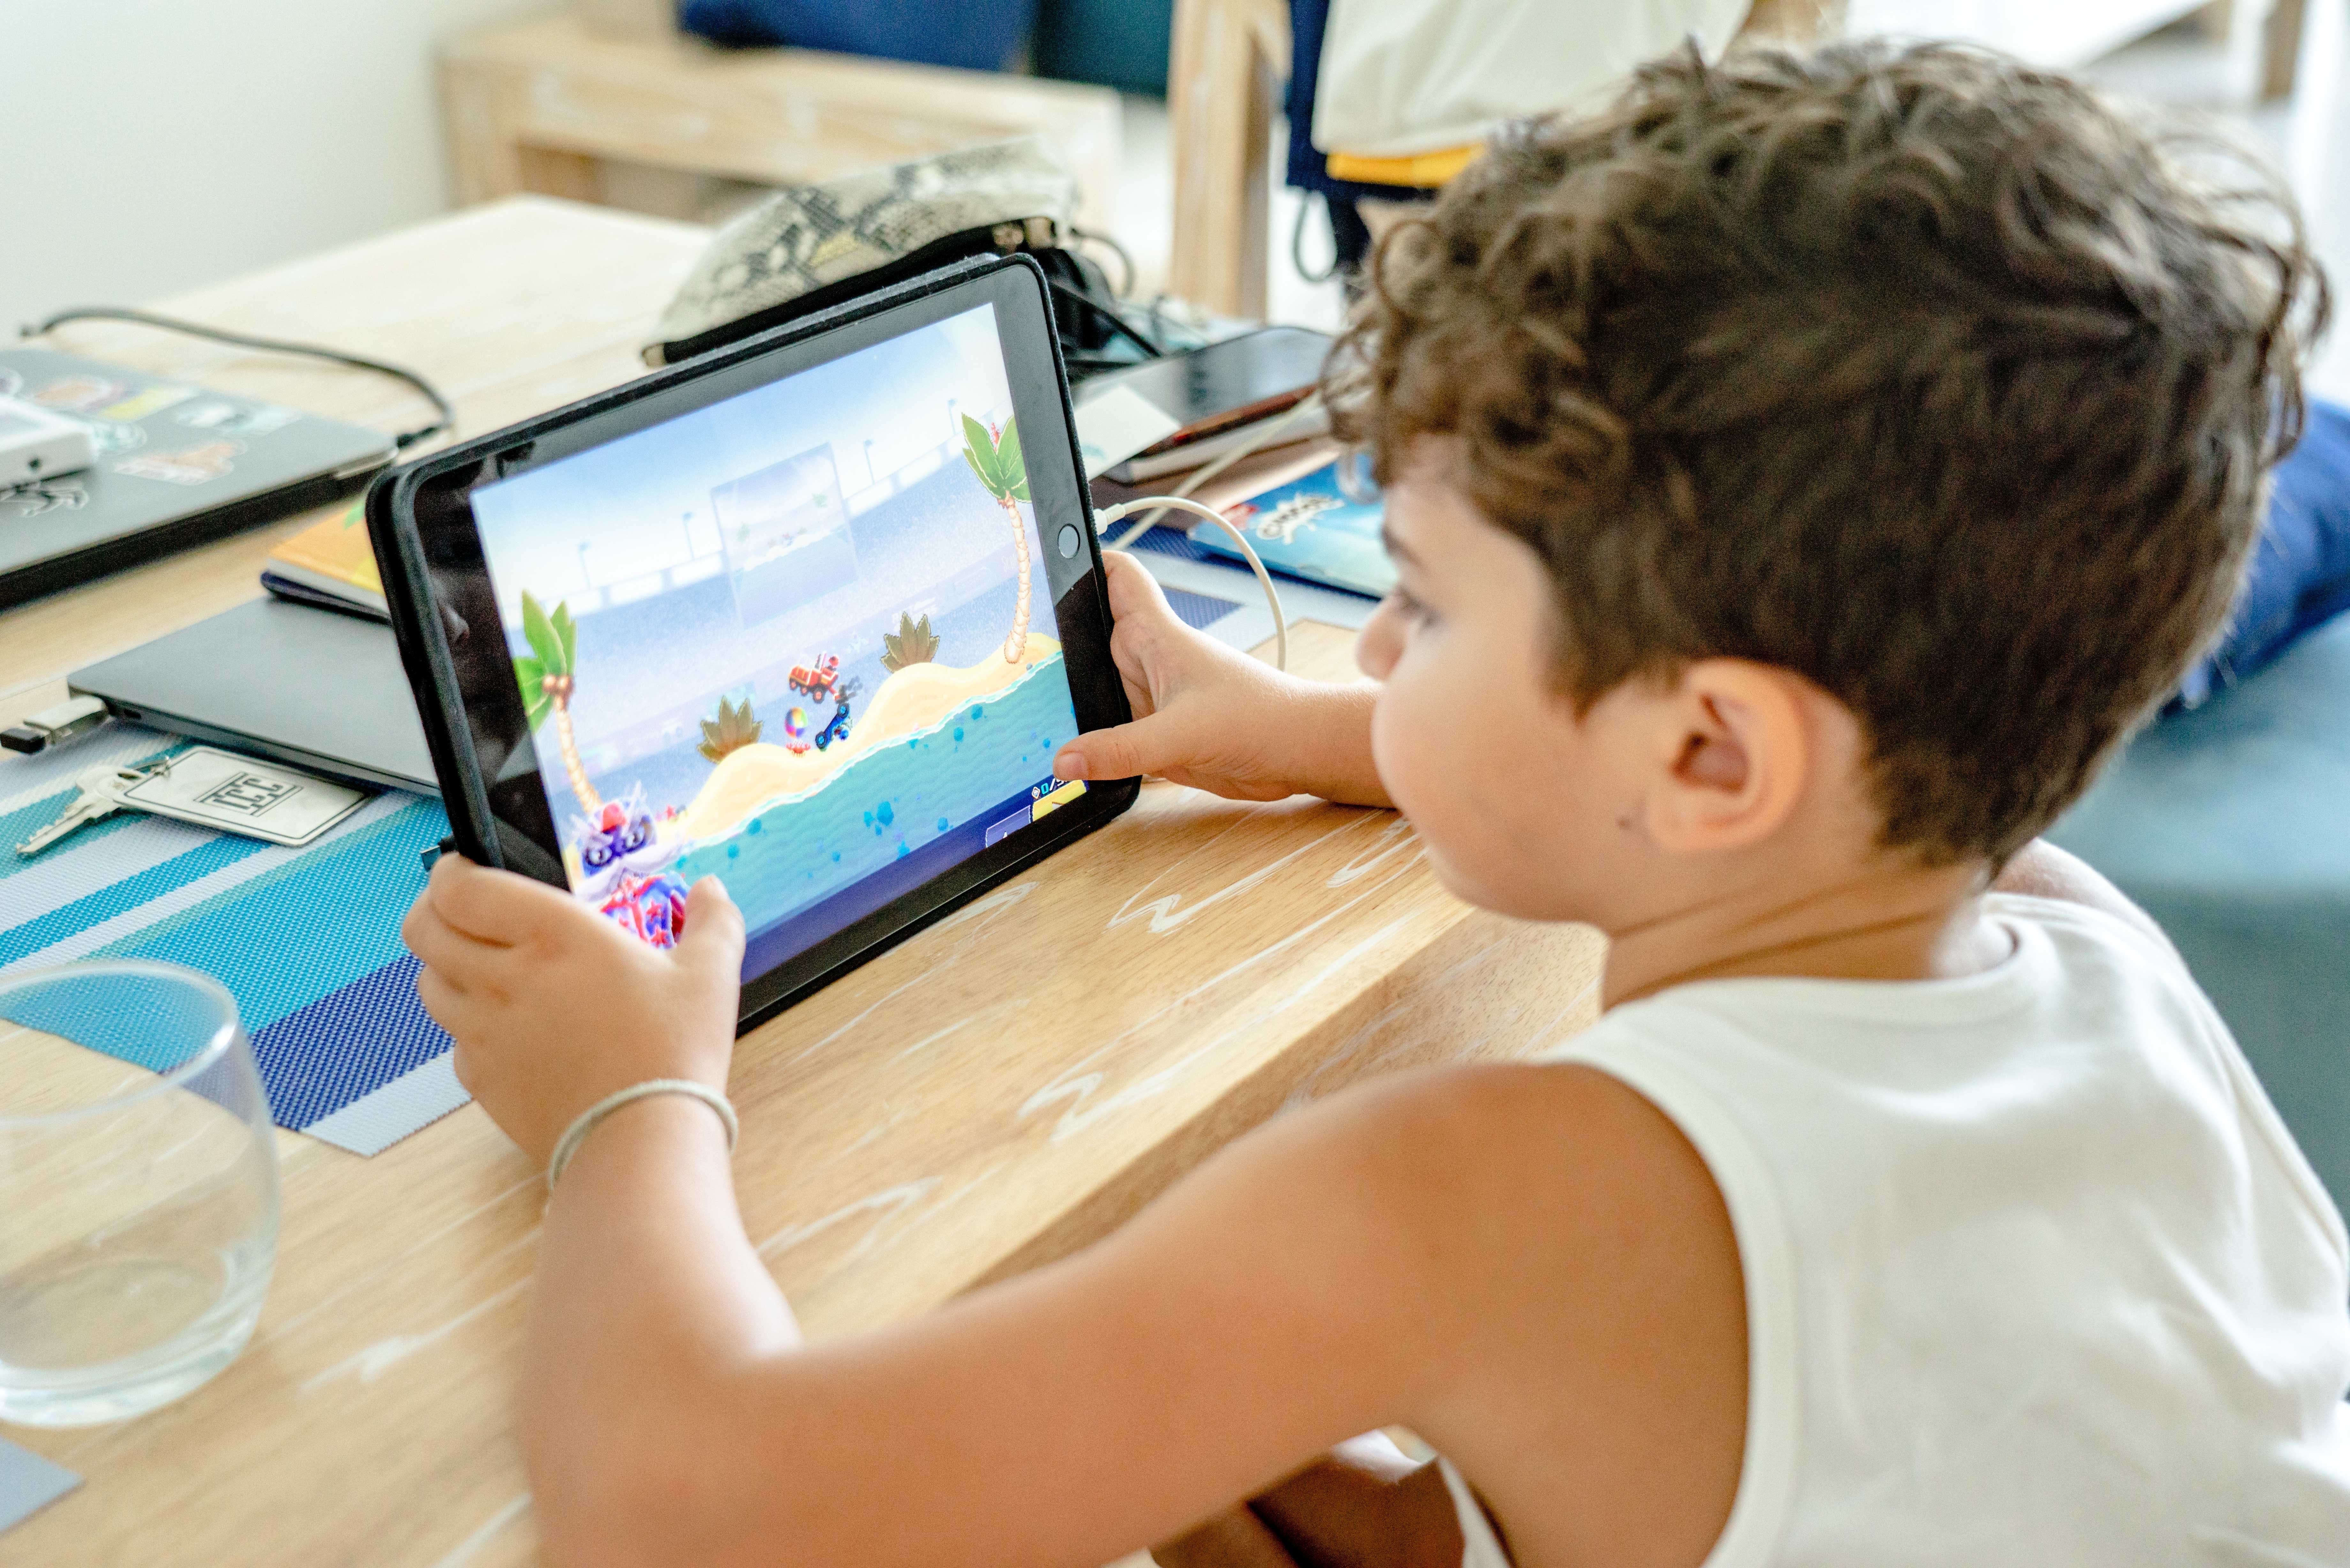 Apple iPad Kid game